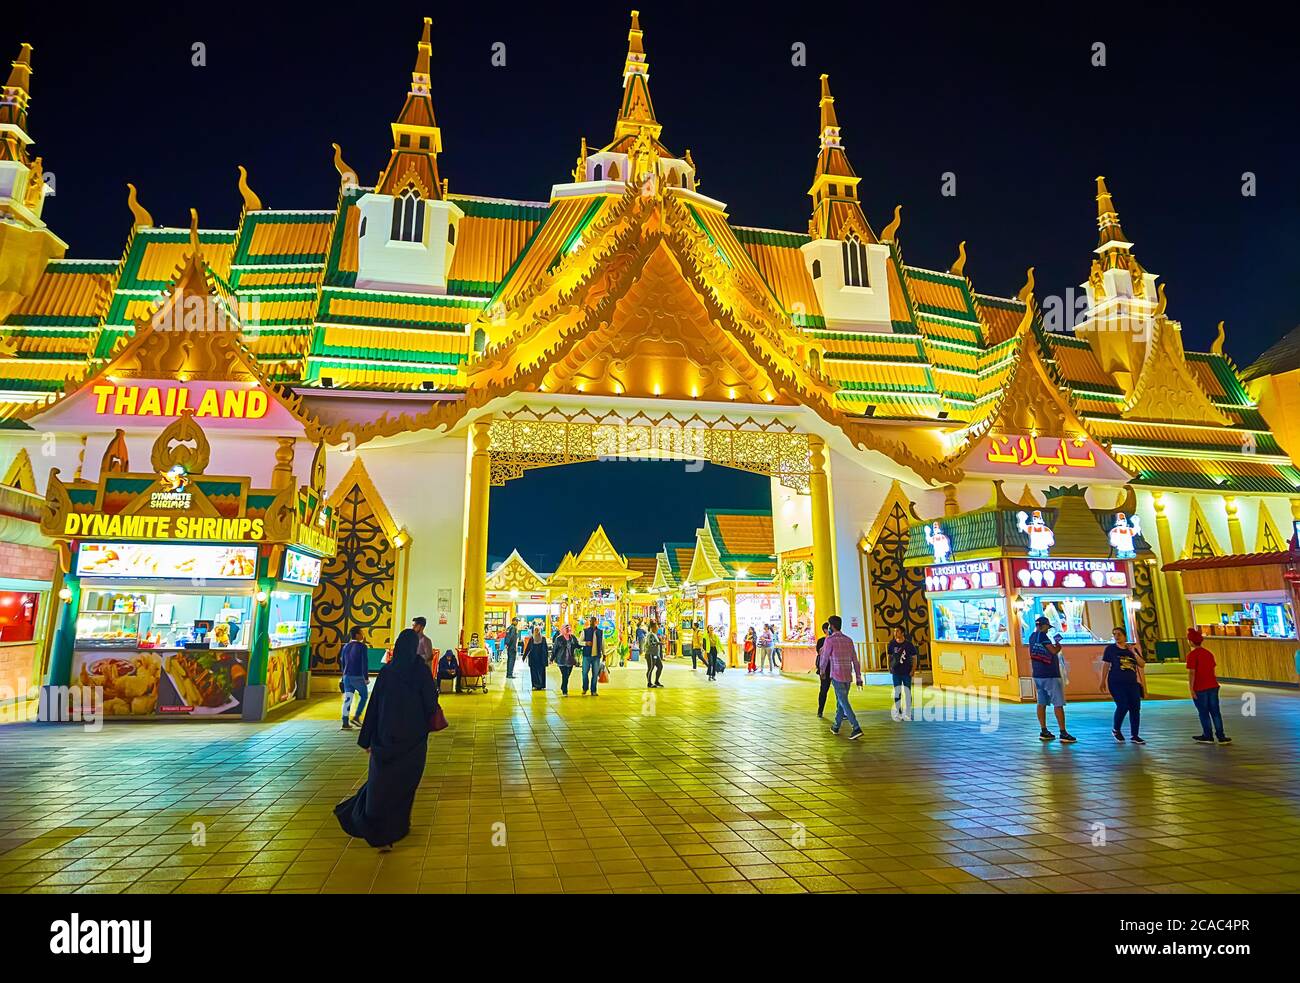 DUBAÏ, Émirats Arabes Unis - 5 MARS 2020 : la façade des pavillons de Thaïlande du Global Village Dubai avec toit traditionnel en pyaéque (multifatigué), surmonté d'un tow chedi Banque D'Images